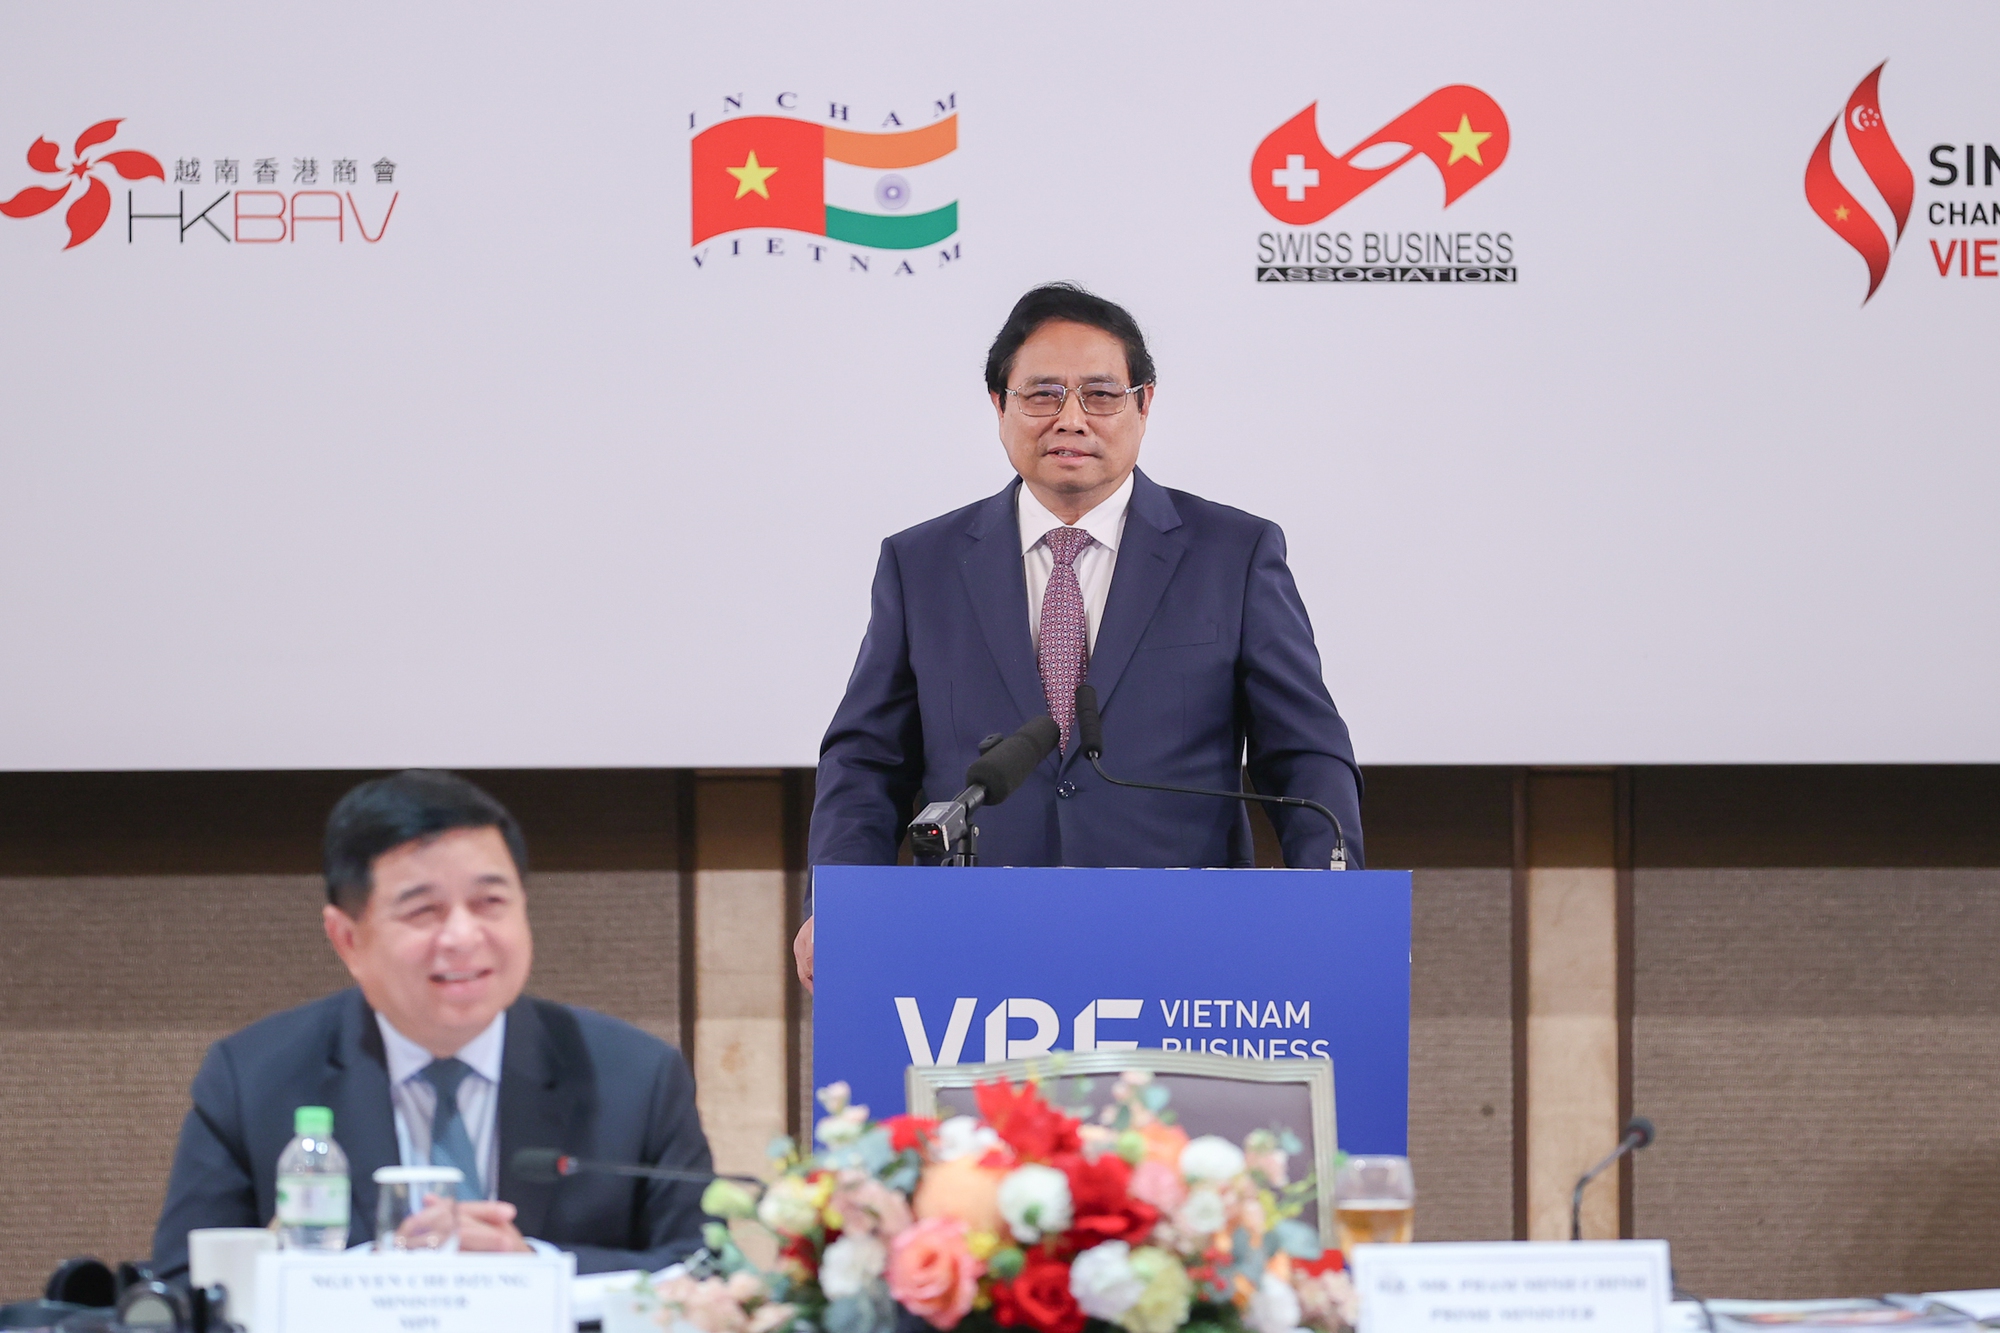 Thủ tướng đề nghị và mong muốn các doanh nghiệp FDI tiếp tục đồng hành, hỗ trợ Việt Nam về 5 yếu tố: Nguồn vốn, thể chế, công nghệ, quản trị, đào tạo nhân lực - Ảnh: VGP/Nhật Bắc